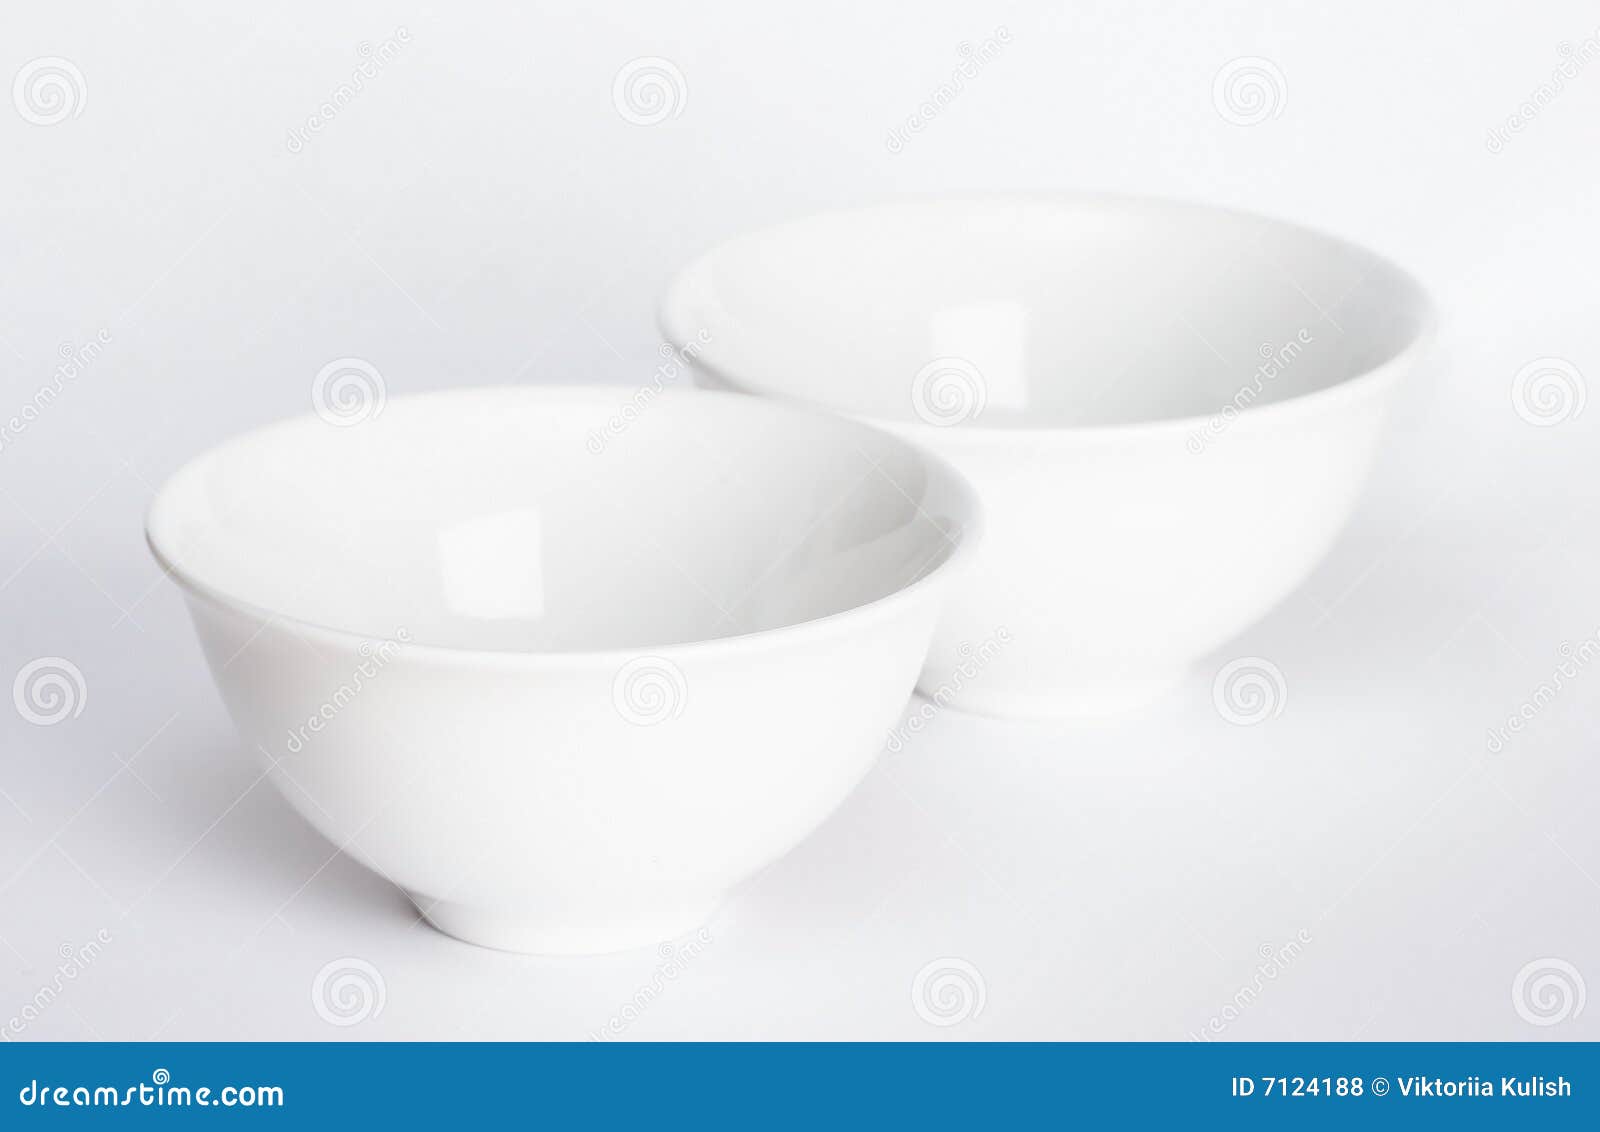 two-bowls-7124188.jpg